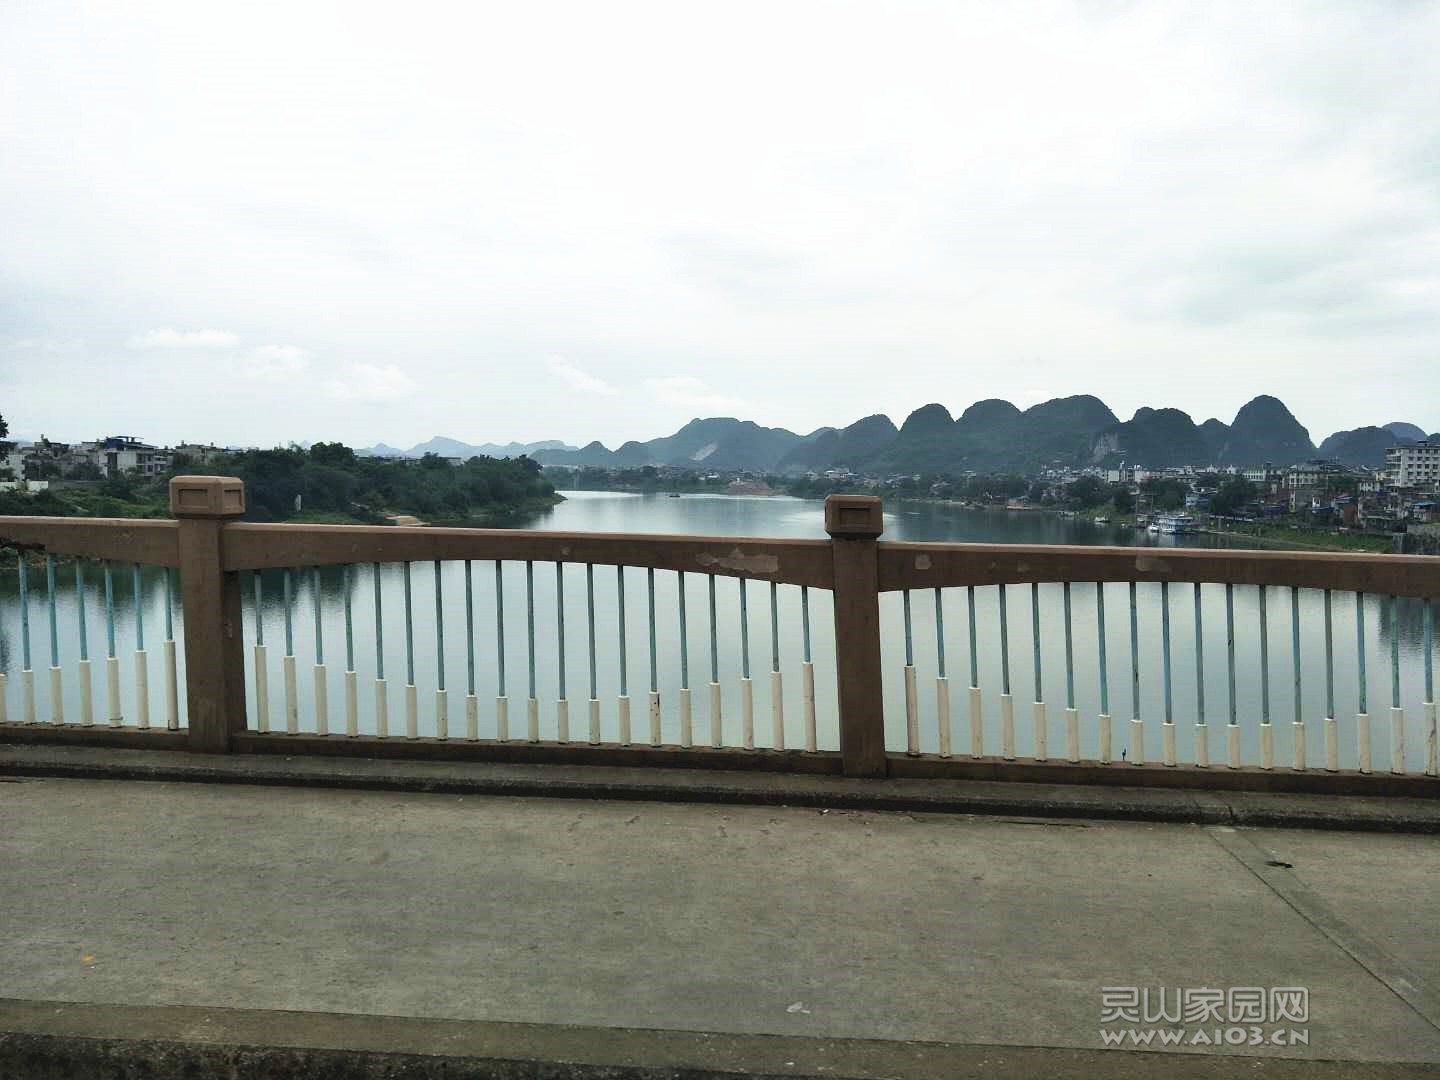 融水县城外的一条江，宽阔的江面映着秀丽的山峰，像一幅山水画